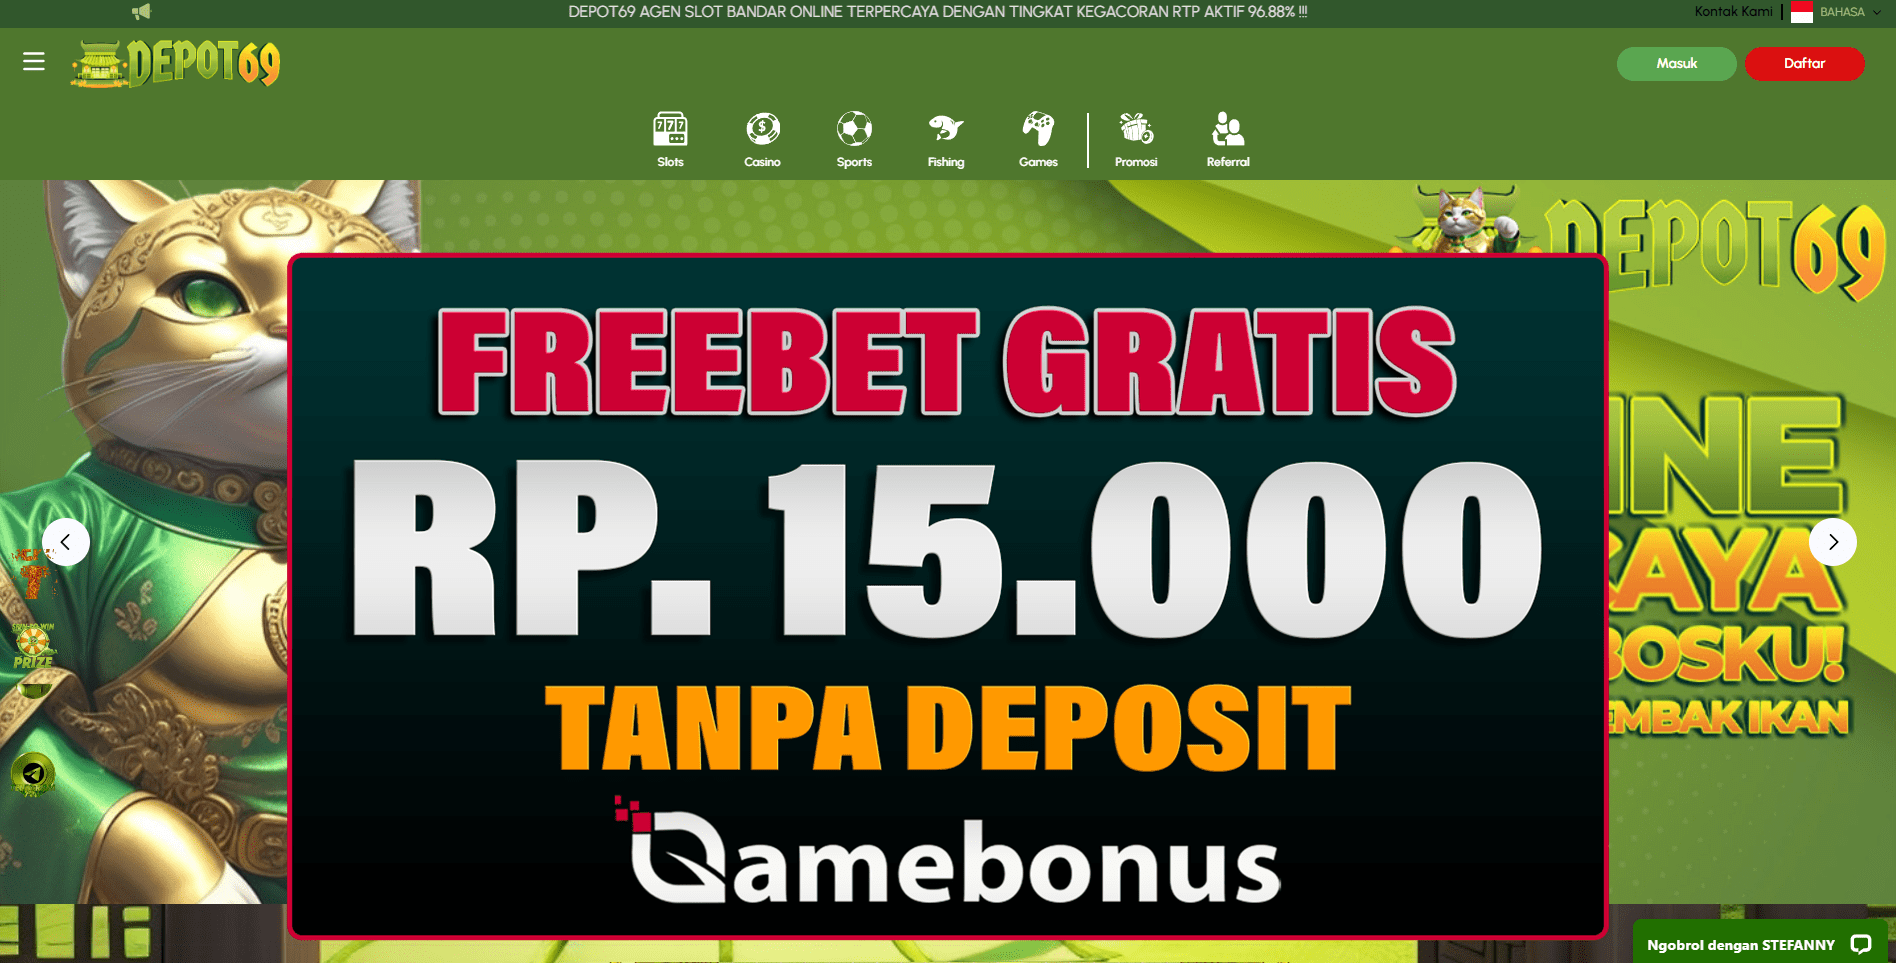 DEPOT69 Bonus Freebet Rp 15.000 Gratis Tanpa Deposit